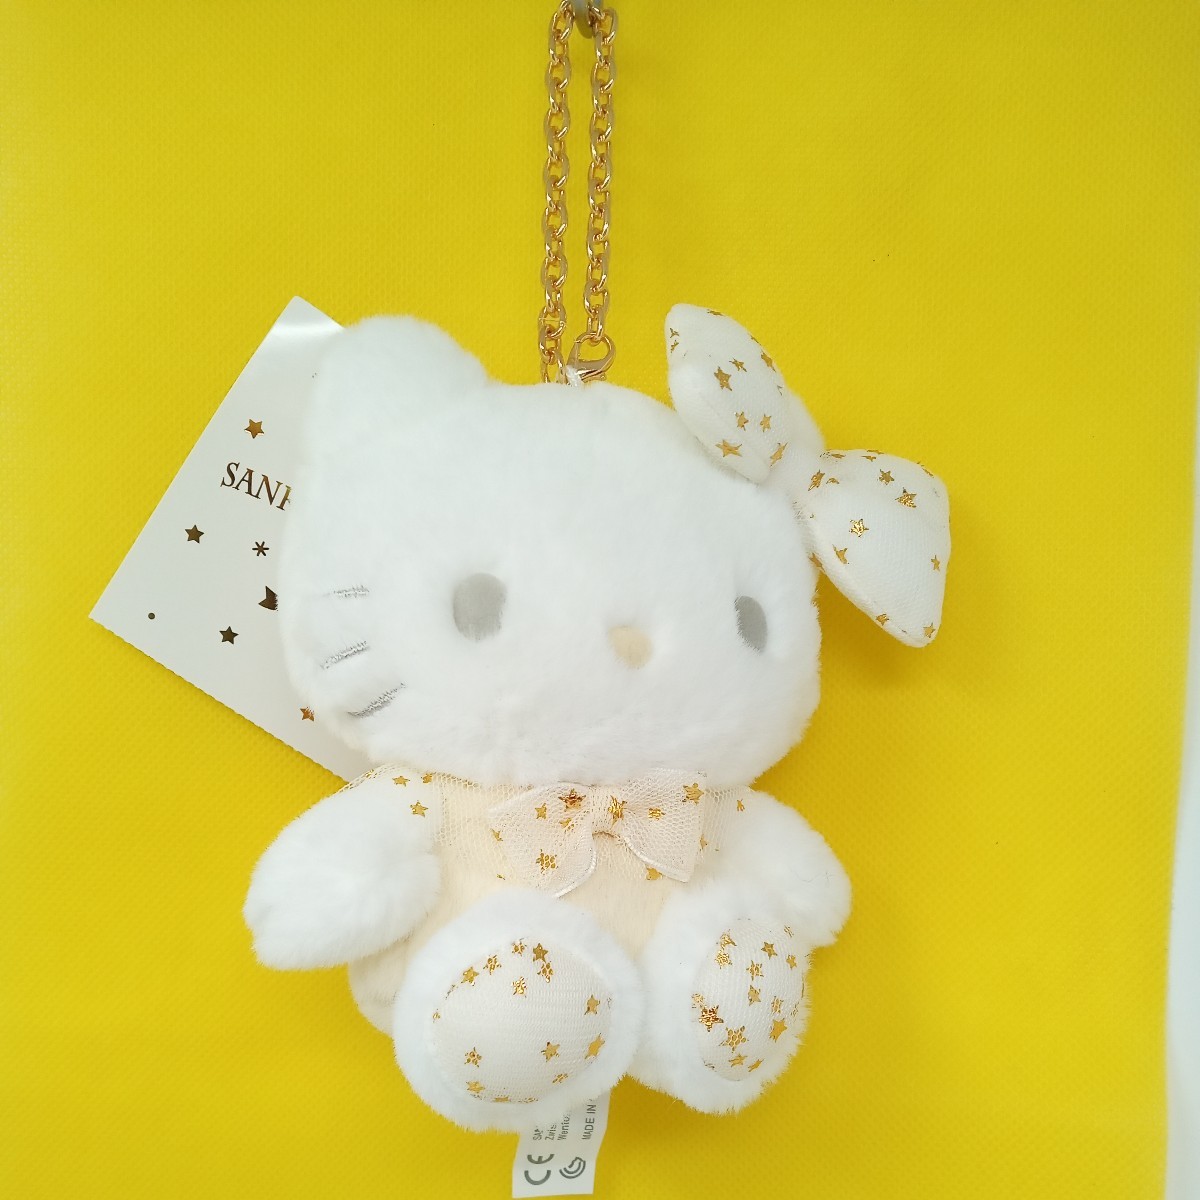  Hello Kitty мягкая игрушка эмблема держатель белый звезда нежный мех сиденье . сумка очарование Sanrio 